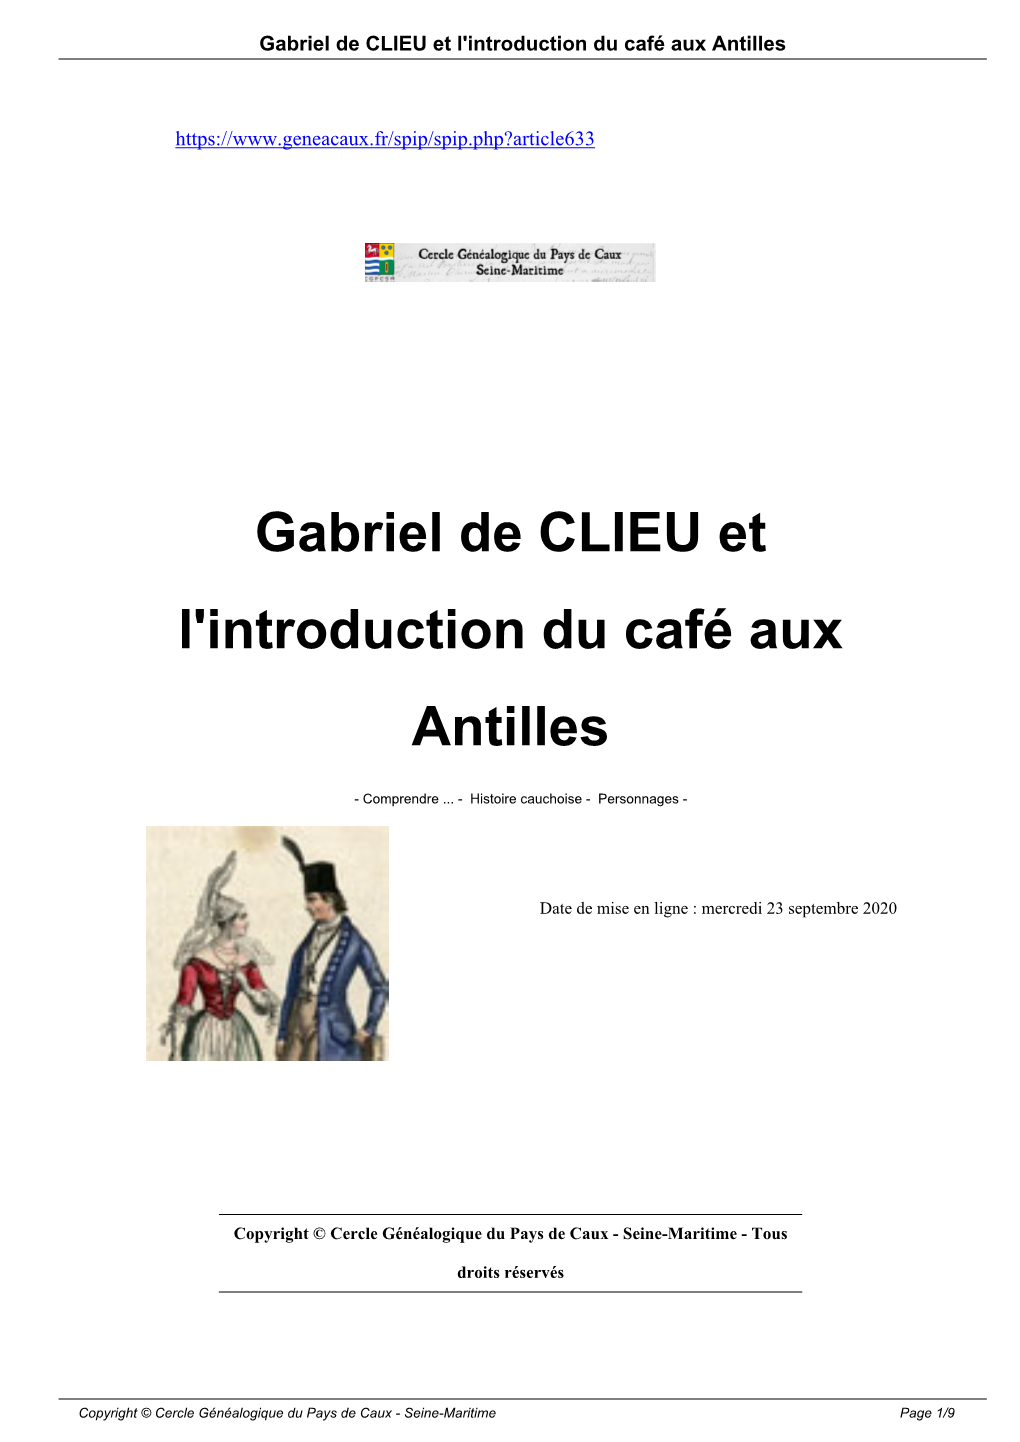 Gabriel De CLIEU Et L'introduction Du Café Aux Antilles